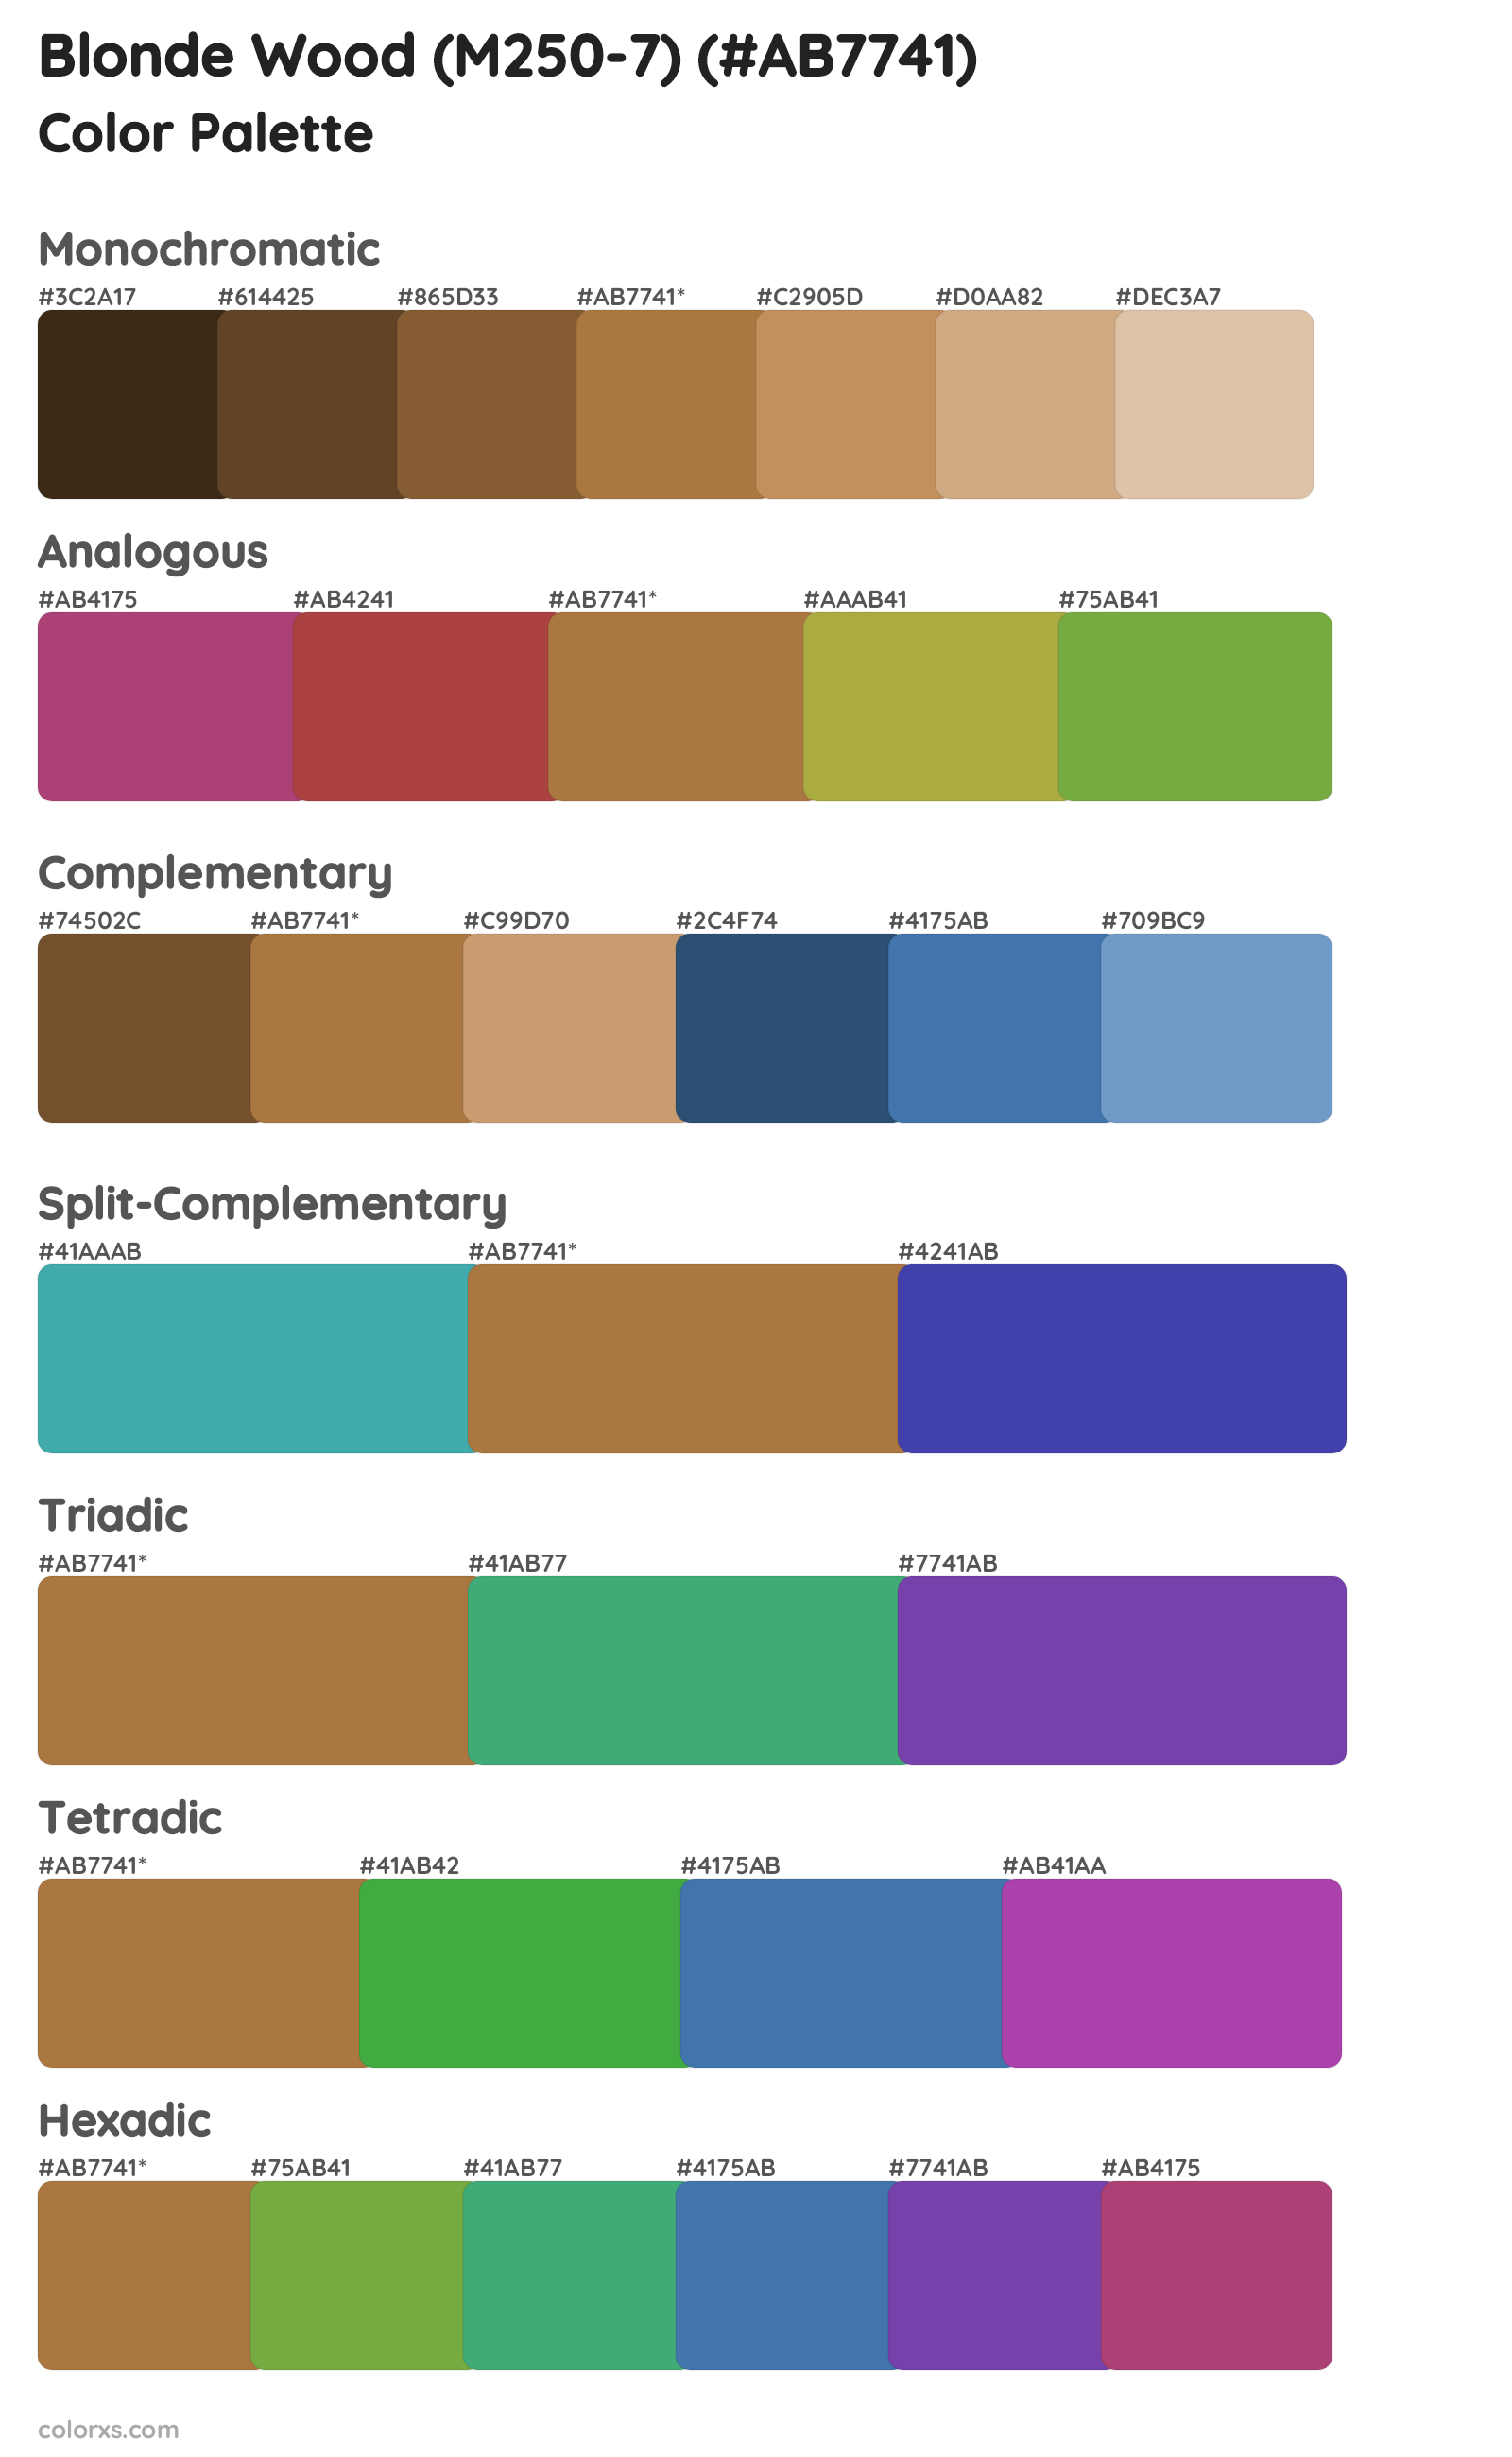 Blonde Wood (M250-7) Color Scheme Palettes